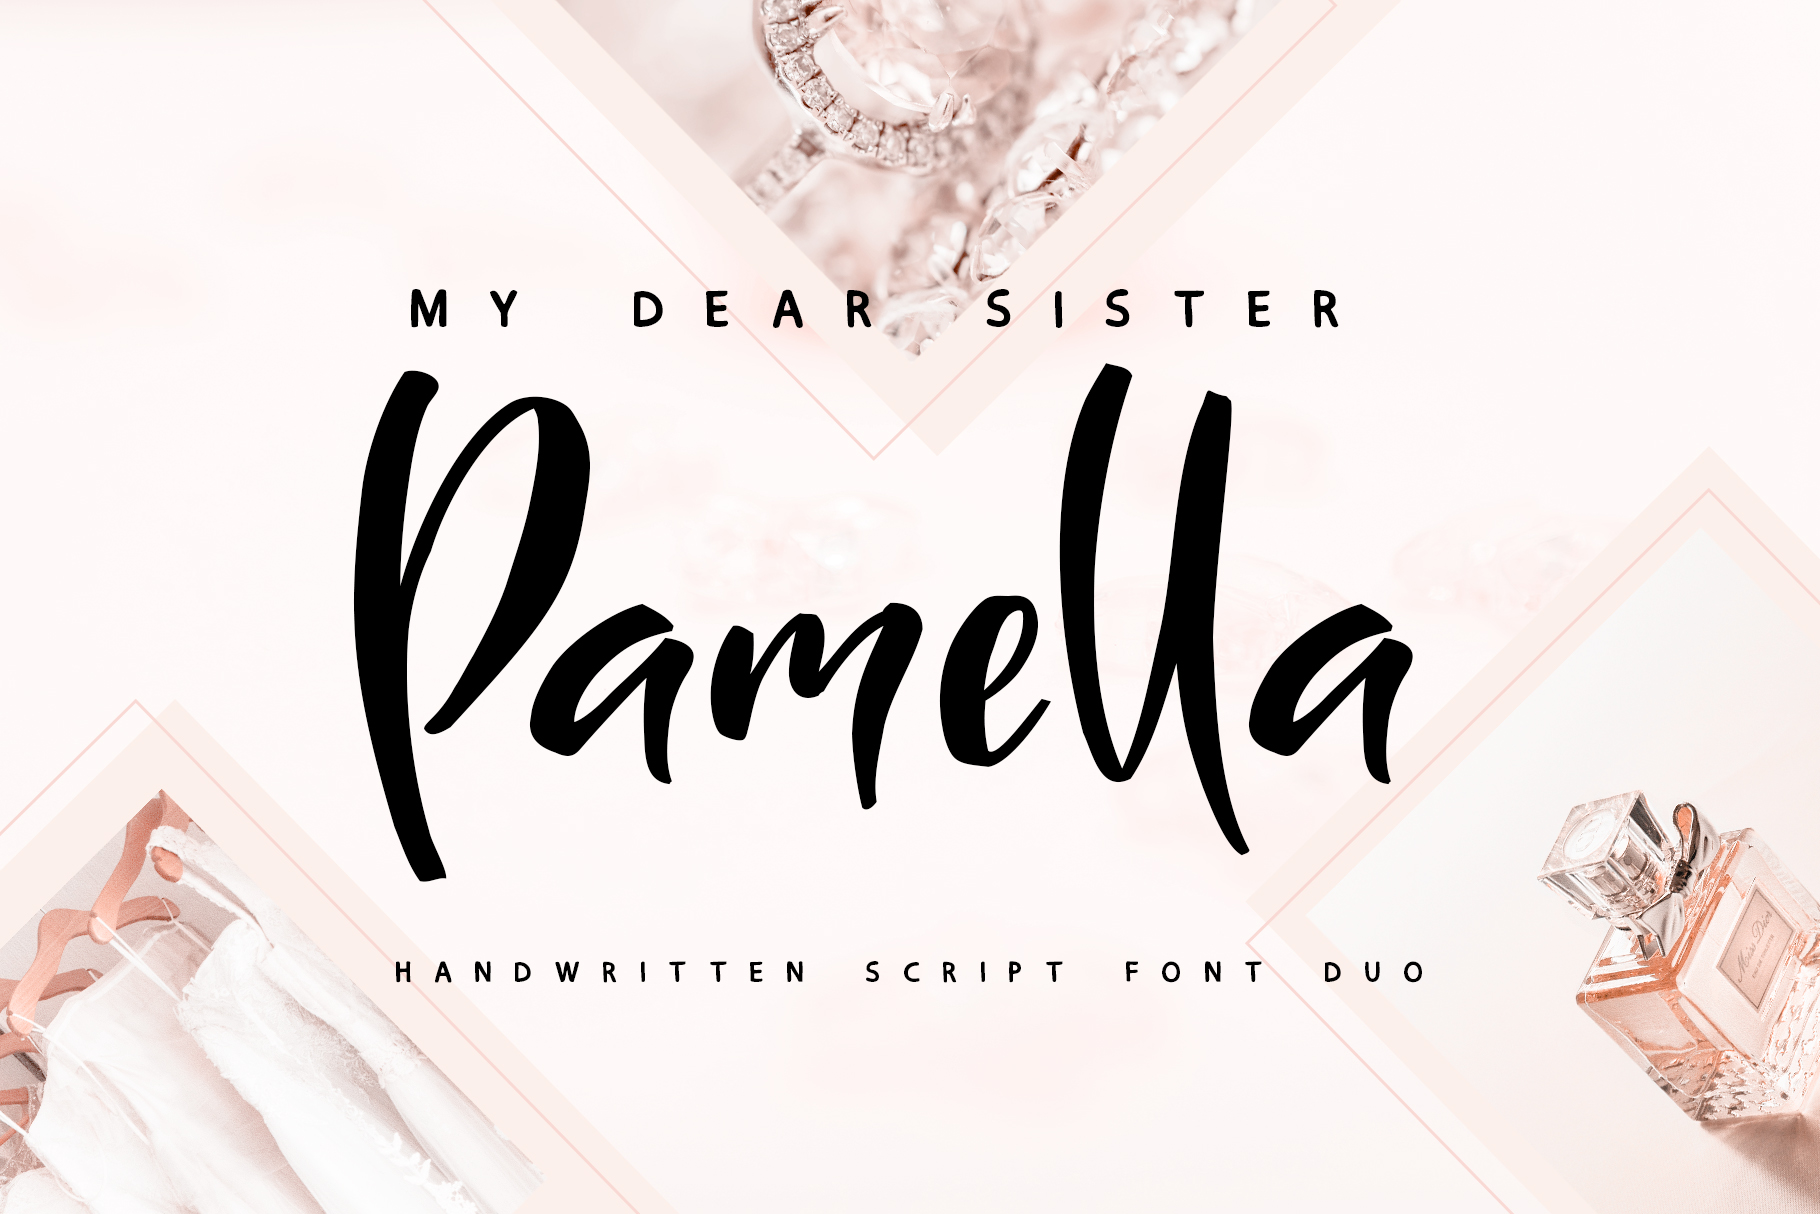 Sister Pamella Font Duo